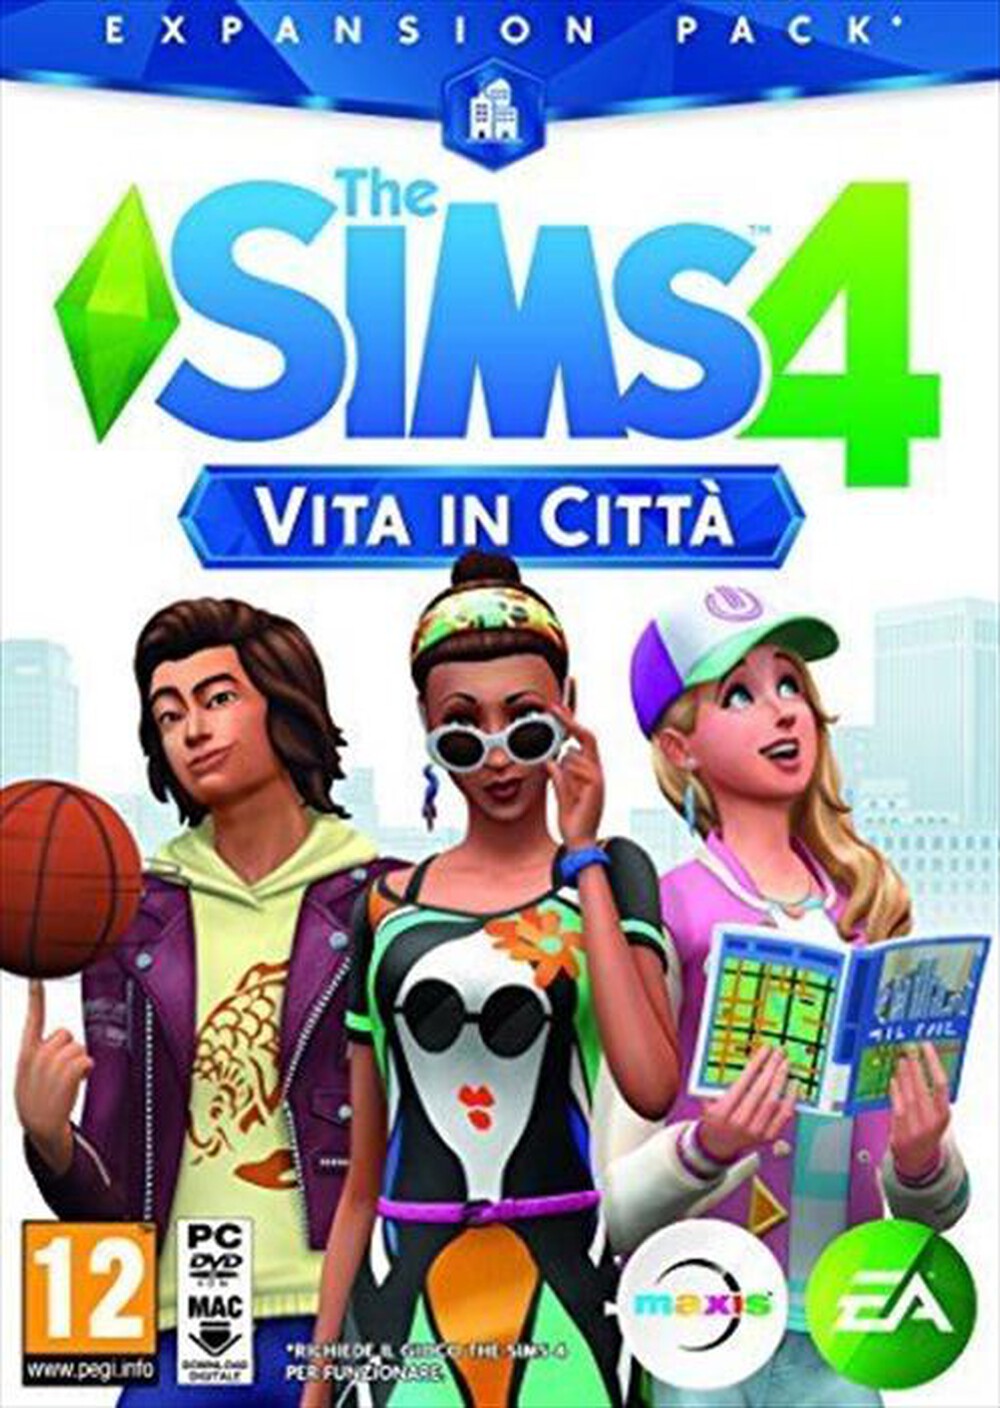 "ELECTRONIC ARTS - The Sims 4 Vita in città ESPANSIONE PC - "